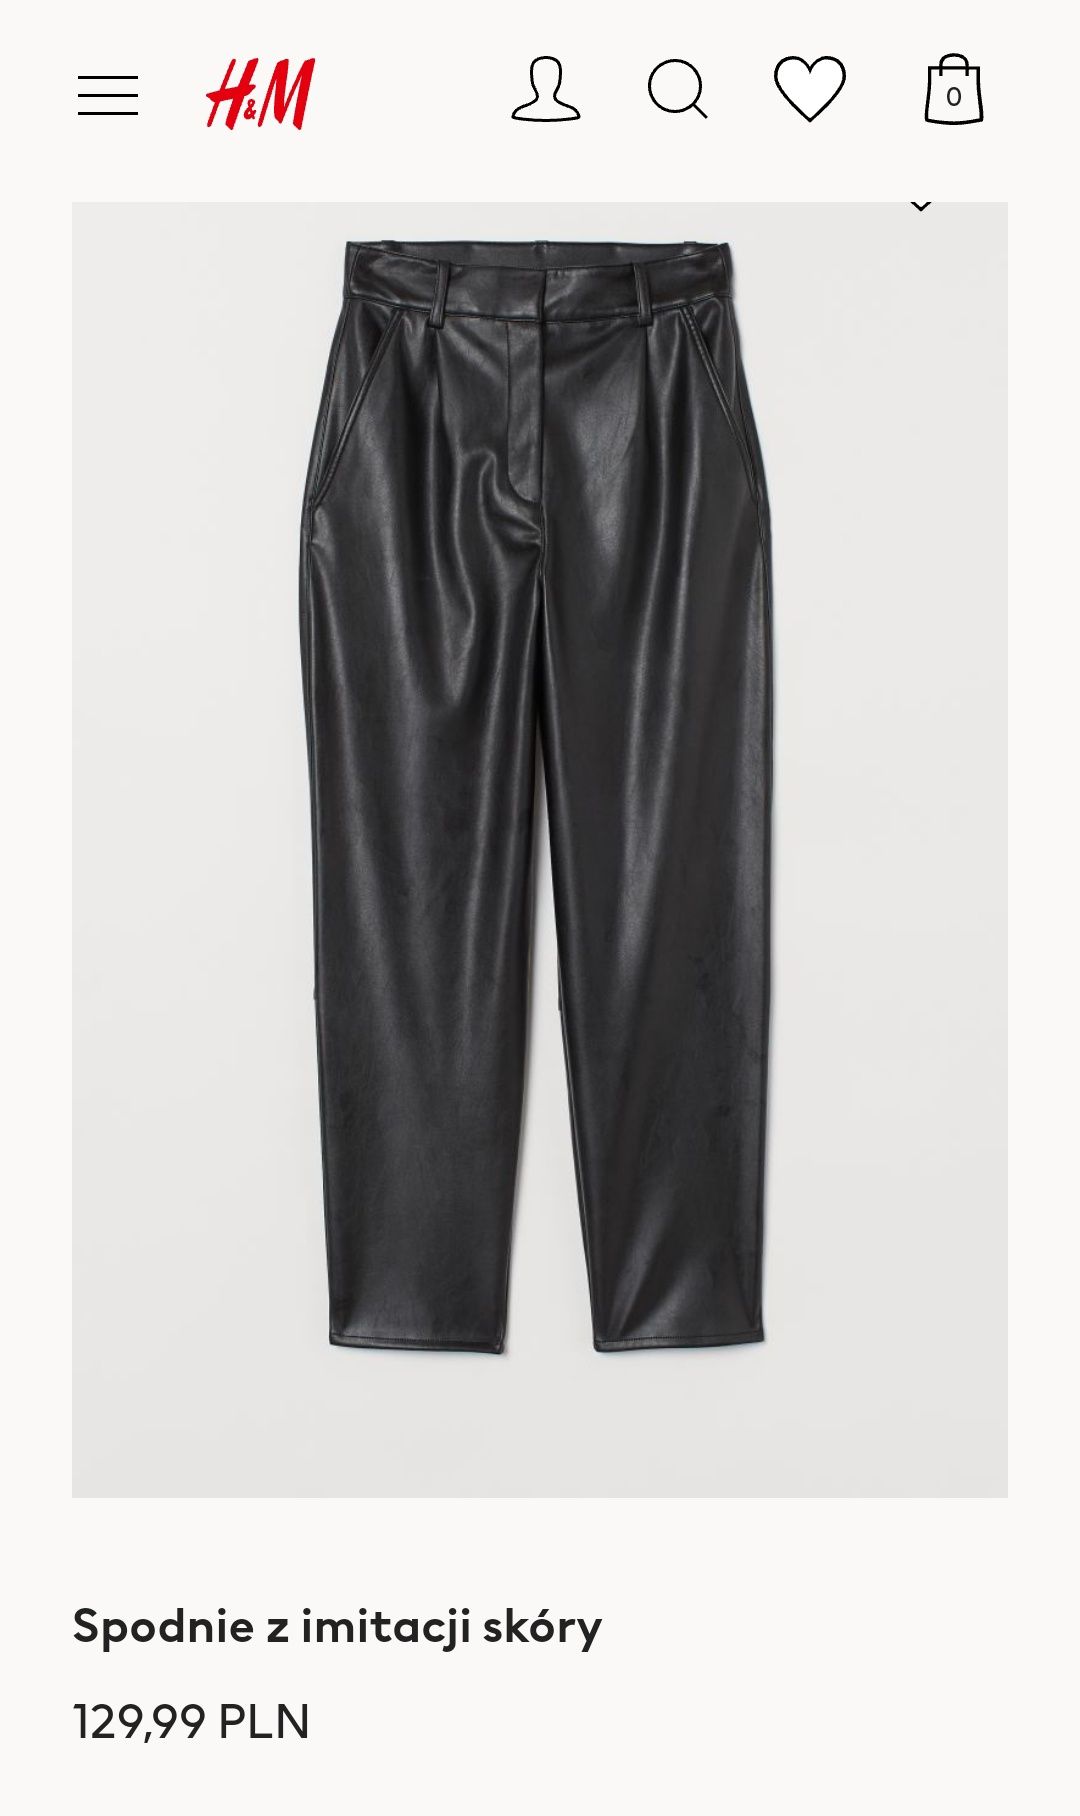 H&M skórzane spodnie damskie rXL